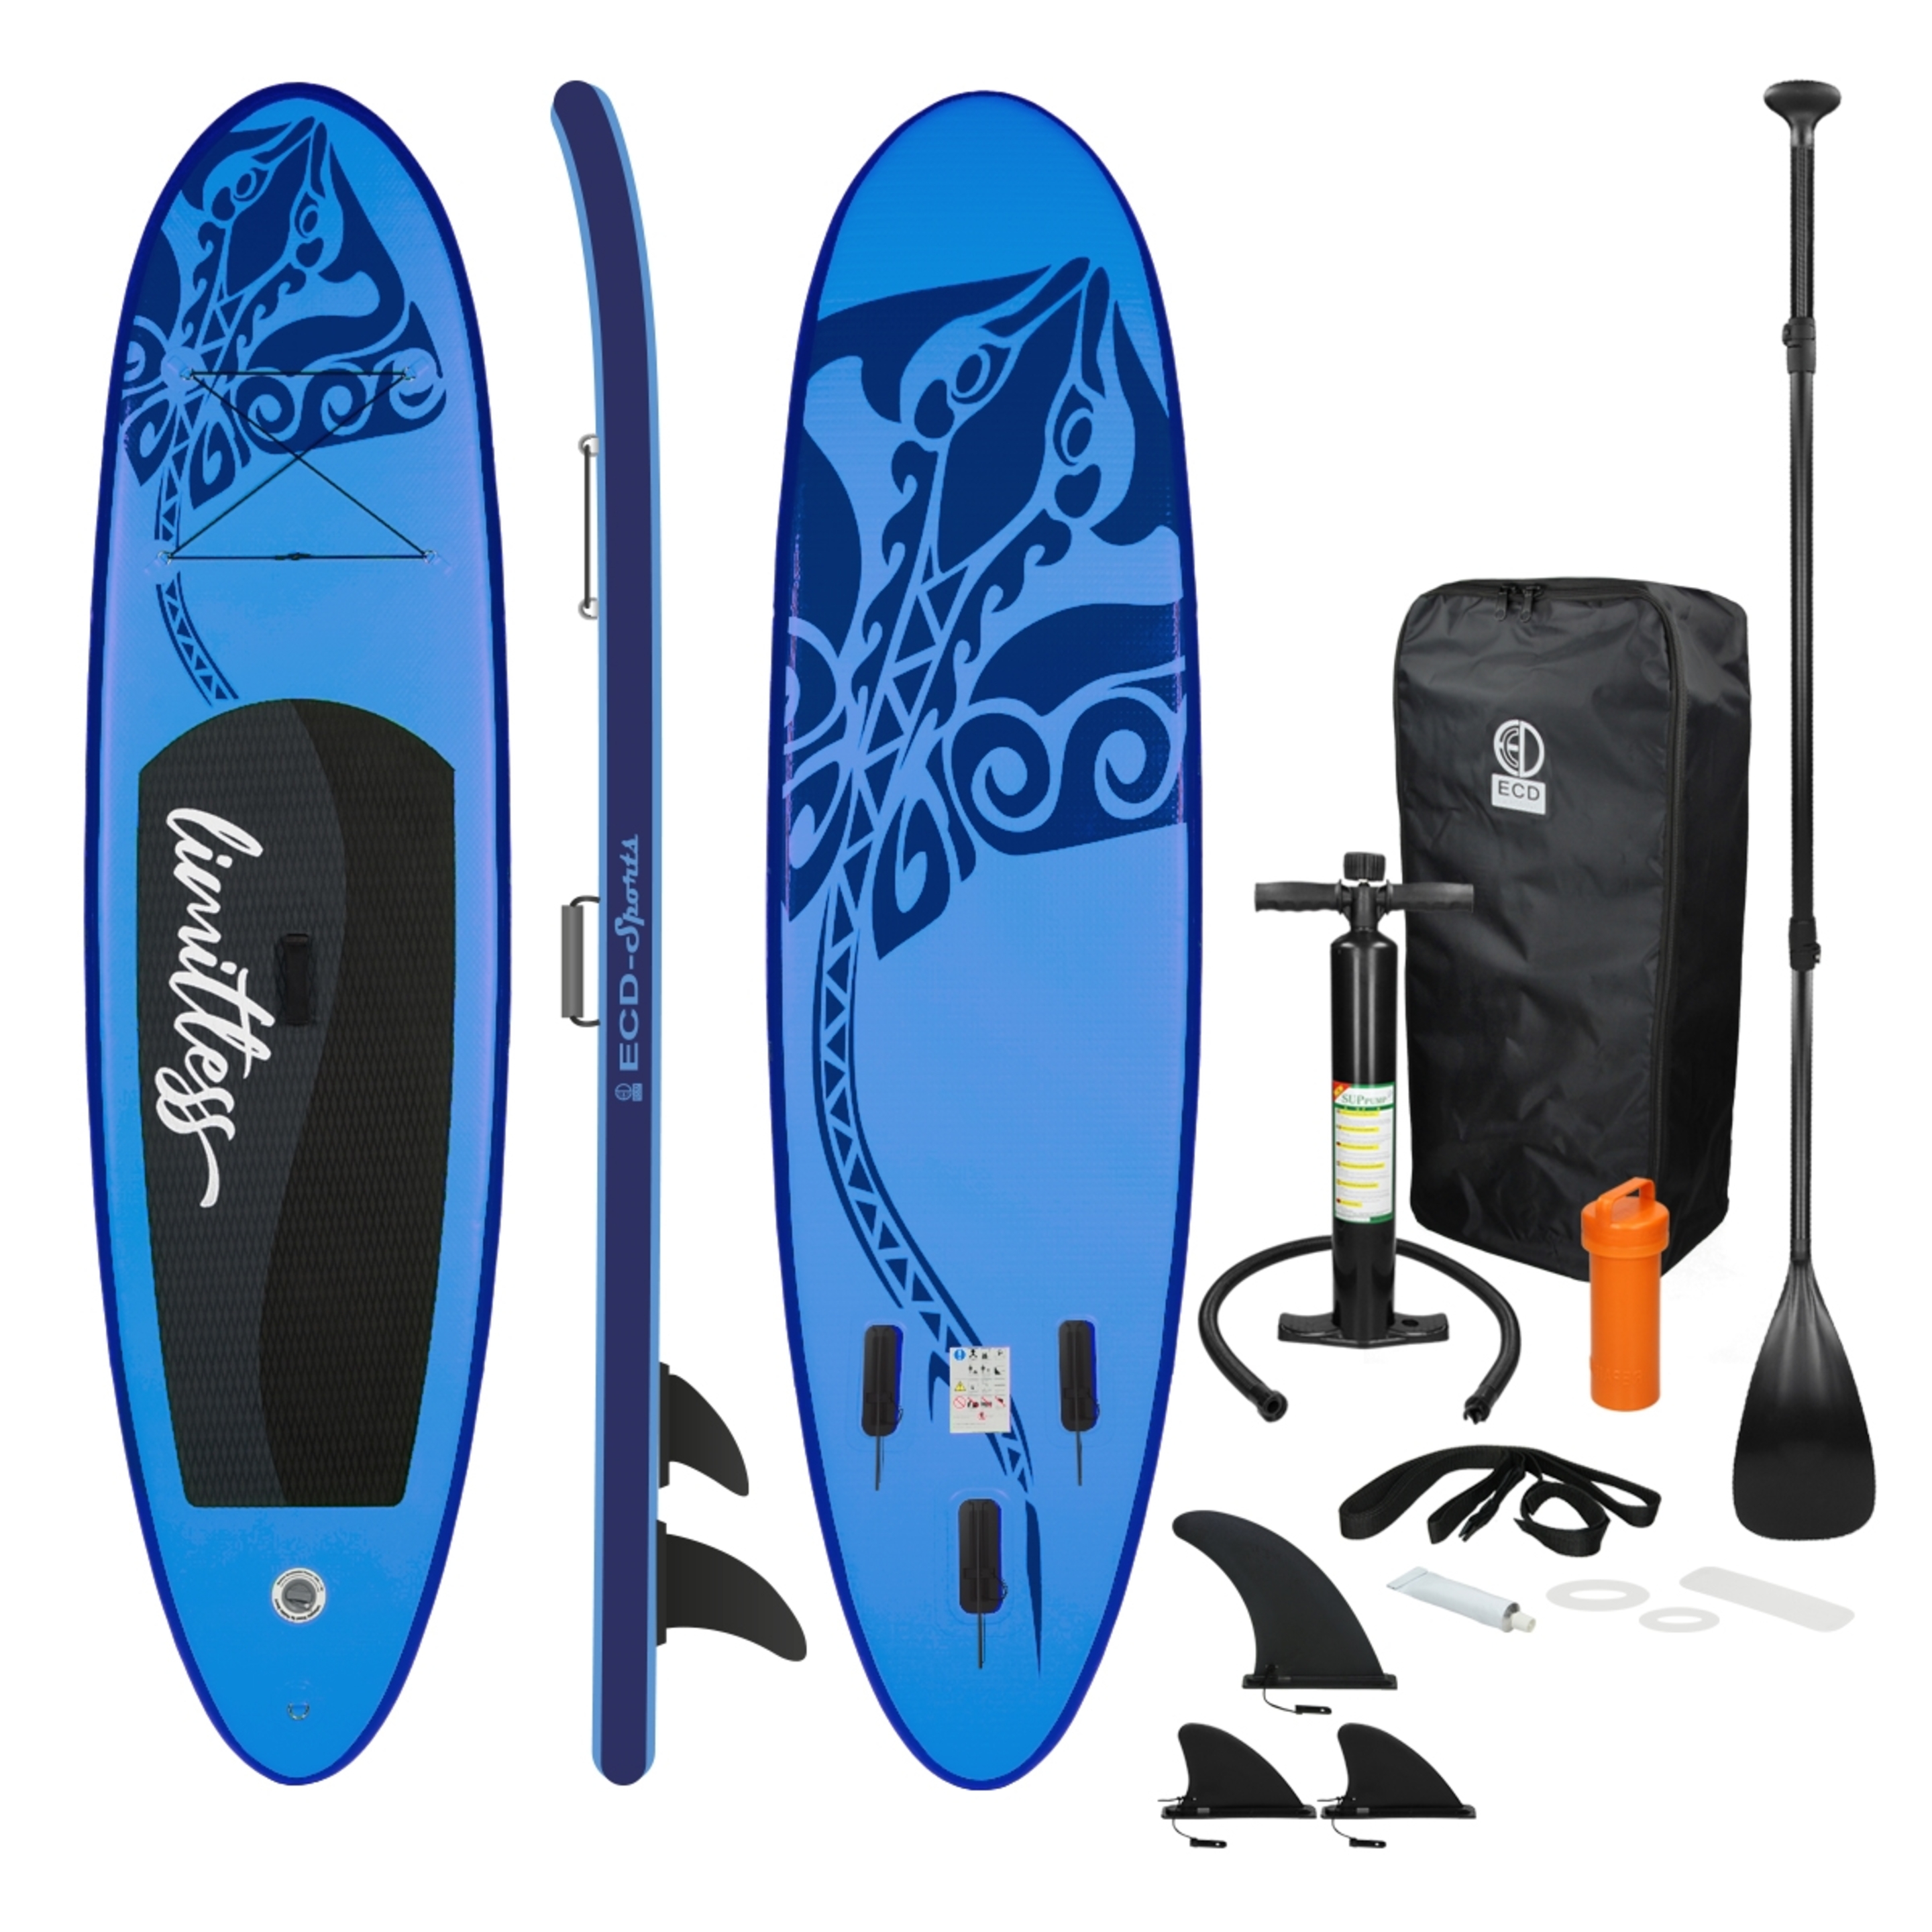 Ecd-germany Tabla Hinchable De Paddle Surf Sup Con Accesorios - azul - 